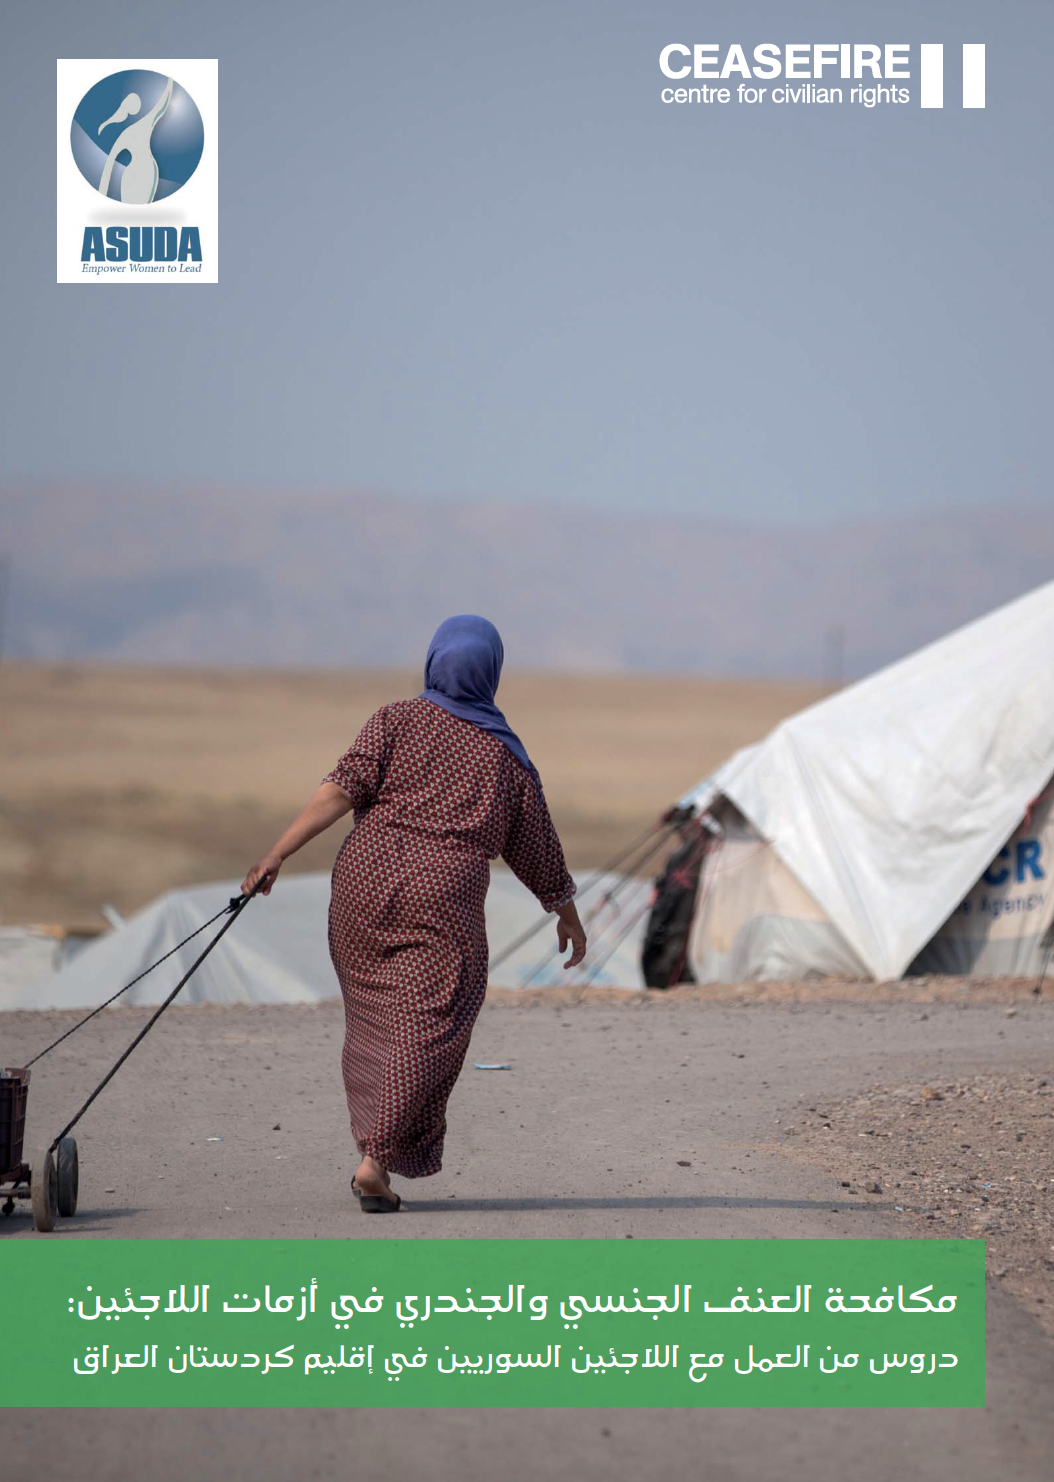 مكافحة العنف الجنسي والجندري في أزمات اللاجئين: دروس من العمل مع اللاجئين السوريين في إقليم كردستان العراق